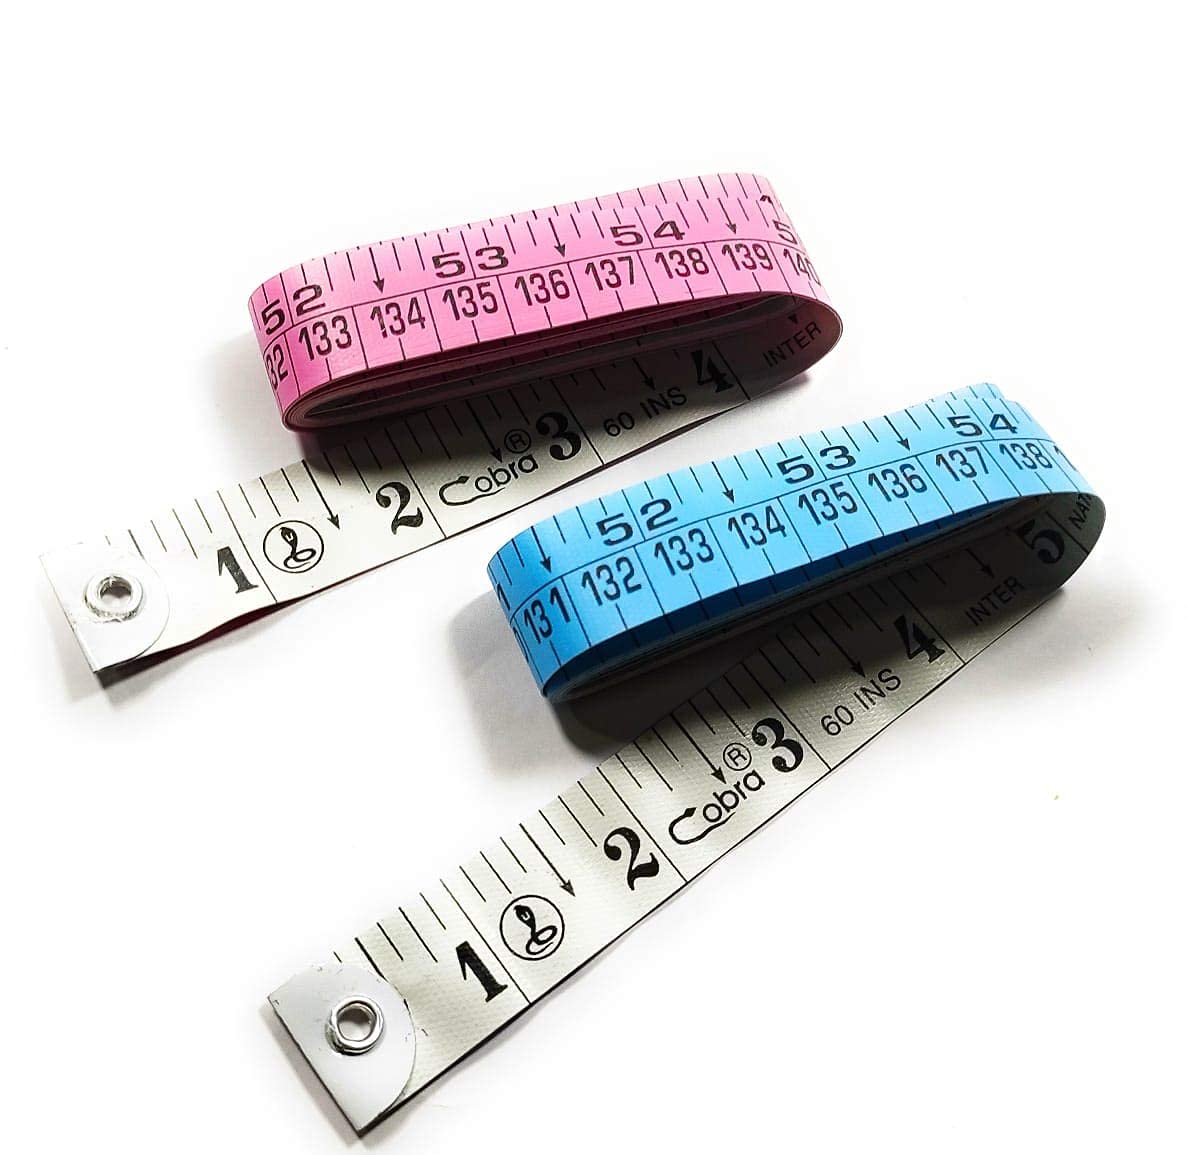 Tape measure for body measurements, Meters